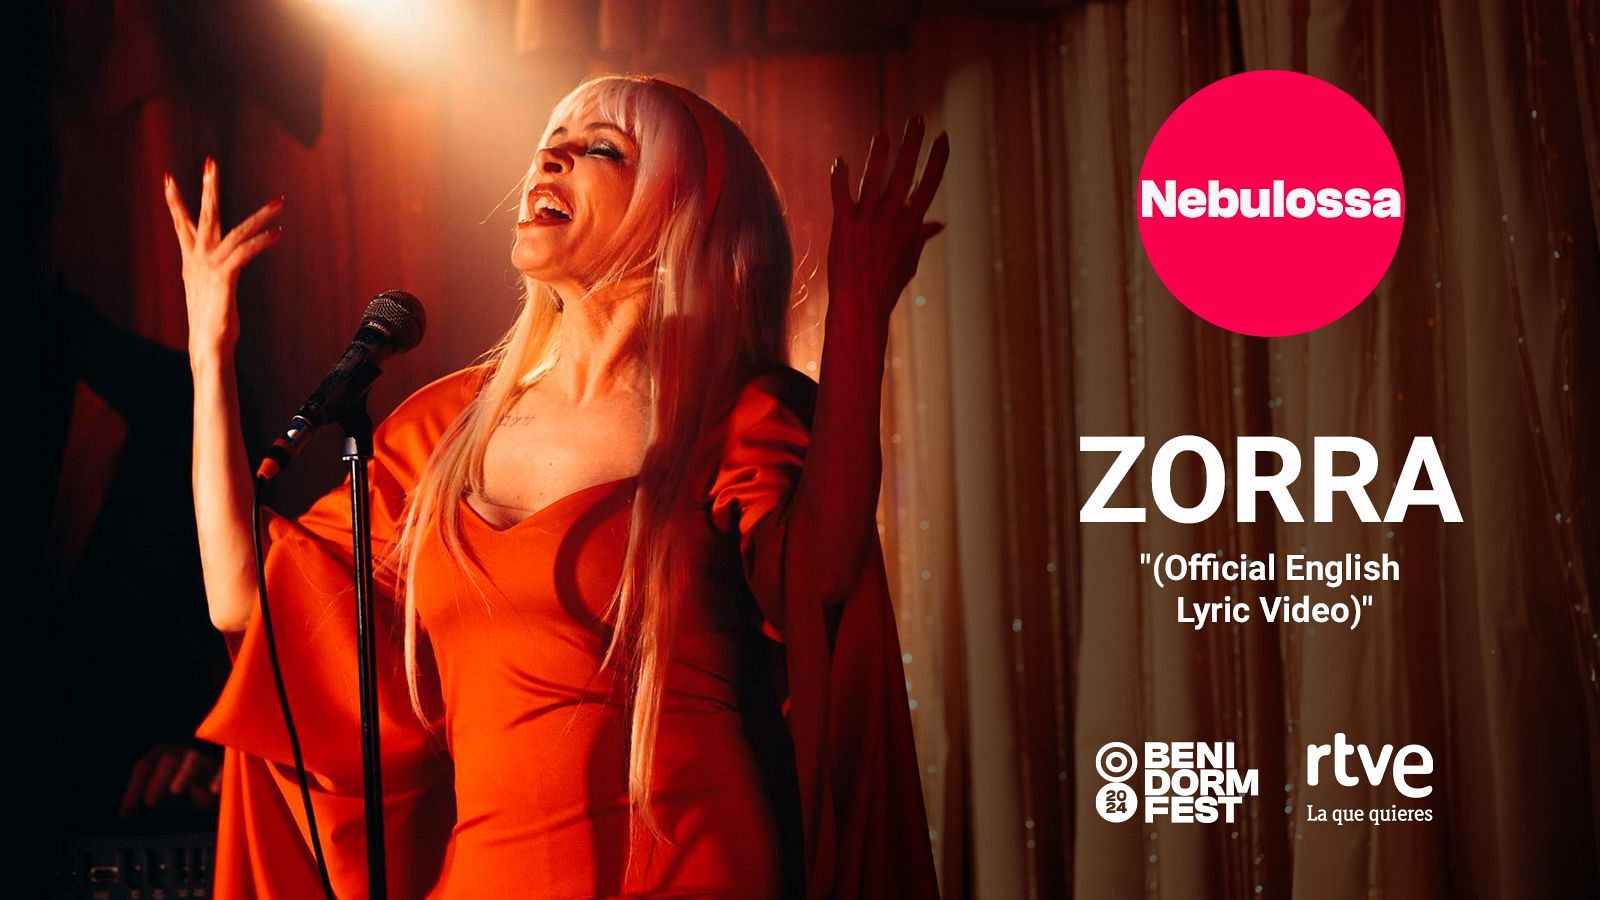 Zorra' de Nebulossa, entre las canciones más virales del mundo en Spotify -  Música y Libros - Cultura 